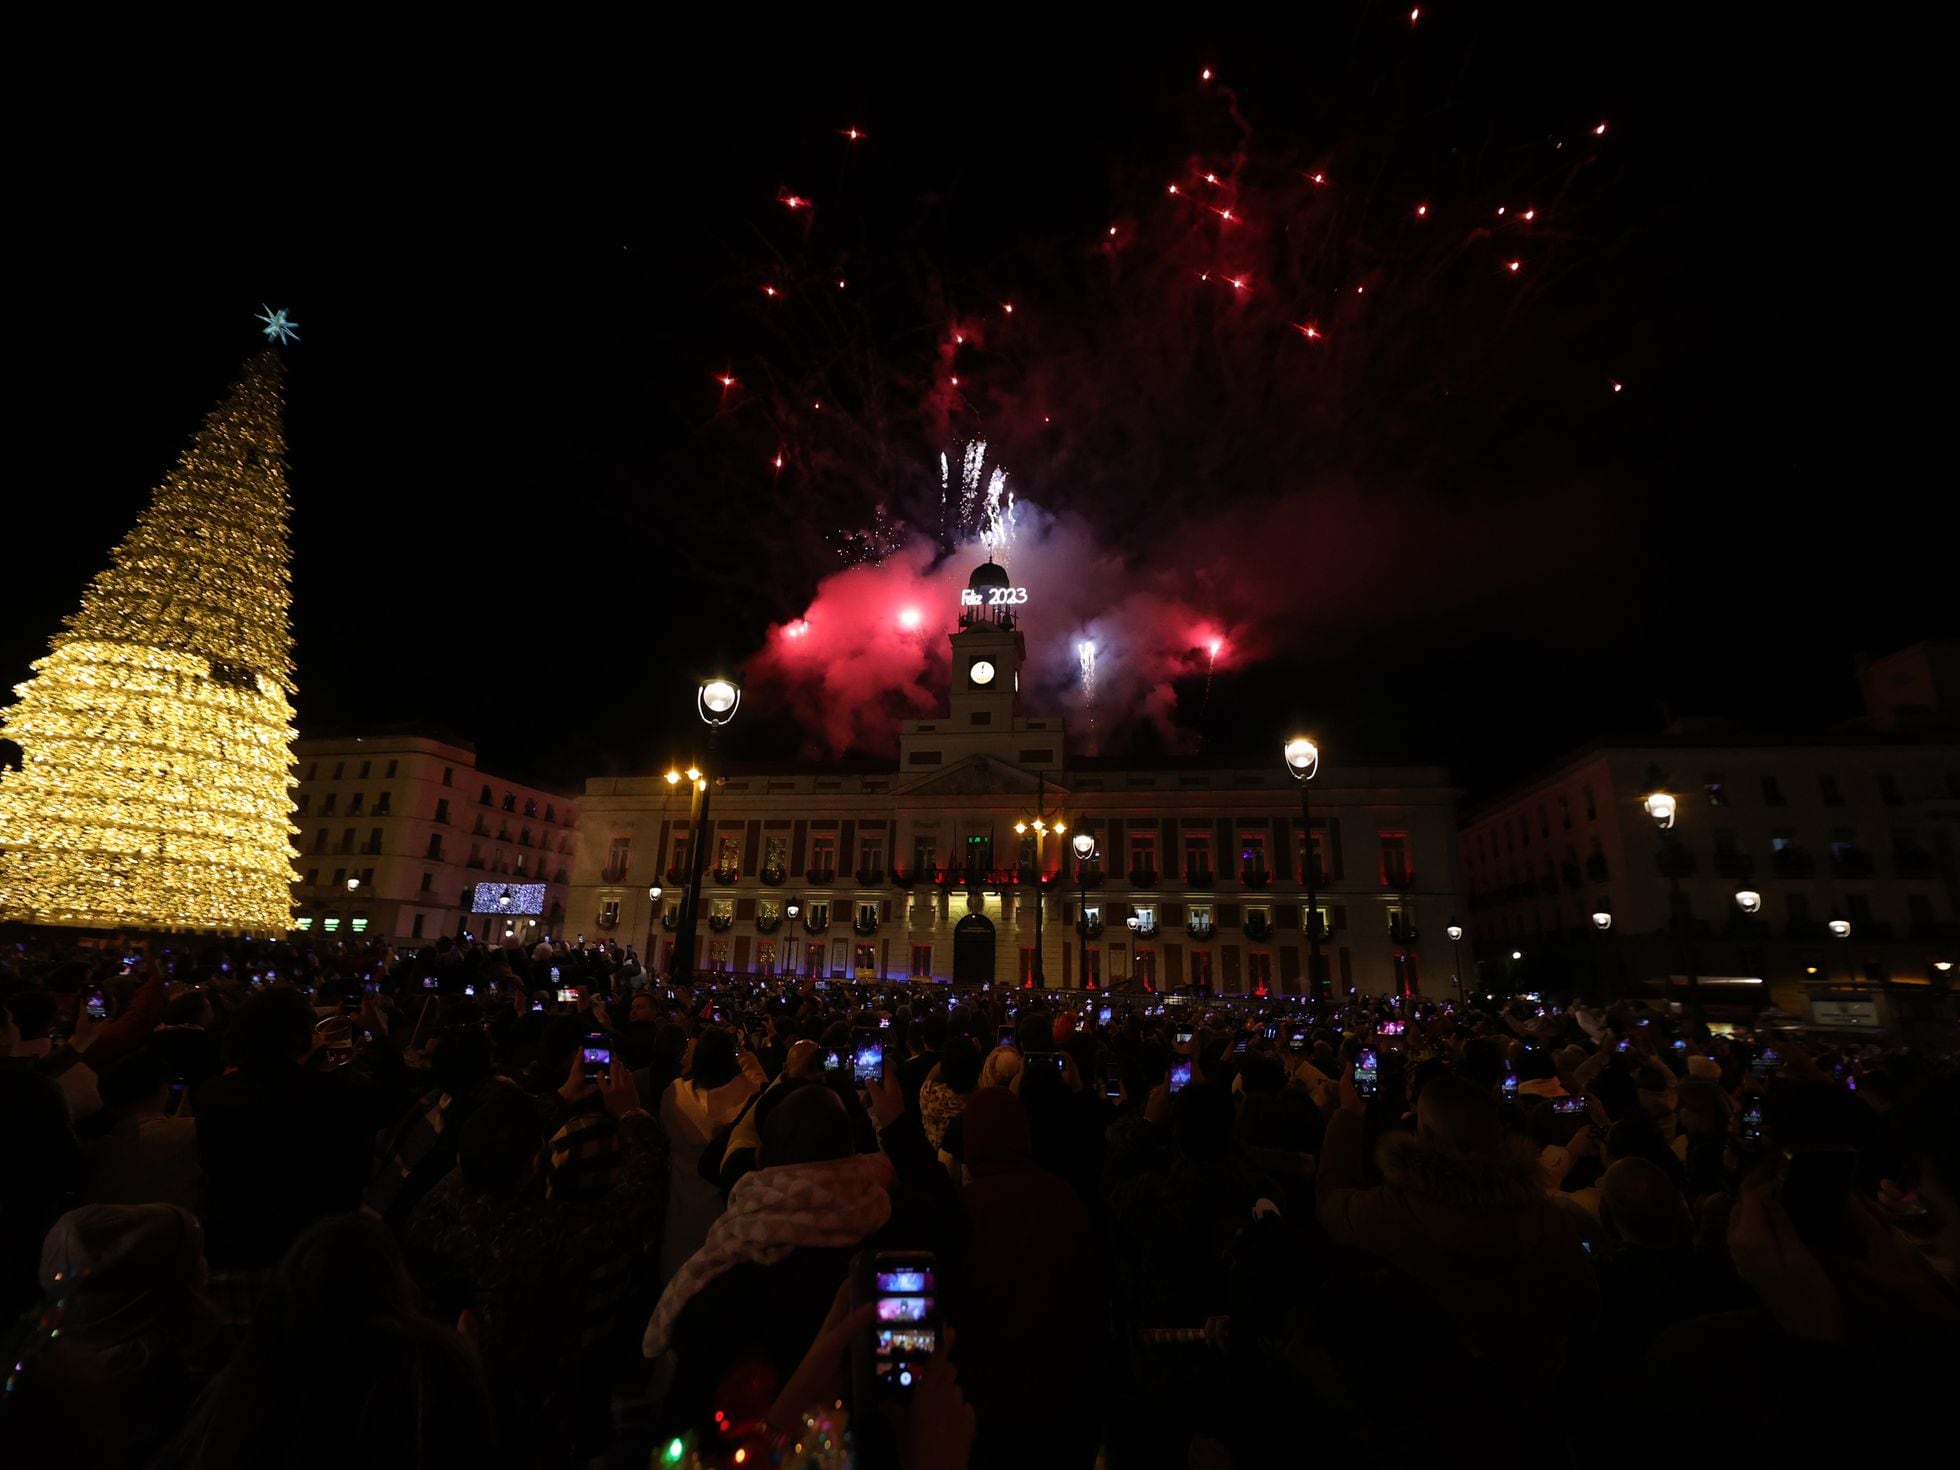 mosaico Concurso Contra la voluntad Así se vivió la Nochevieja en la Puerta del Sol en el primer año sin  restricciones, pero con obras: “Que nada nos separe” | Madrid | EL PAÍS